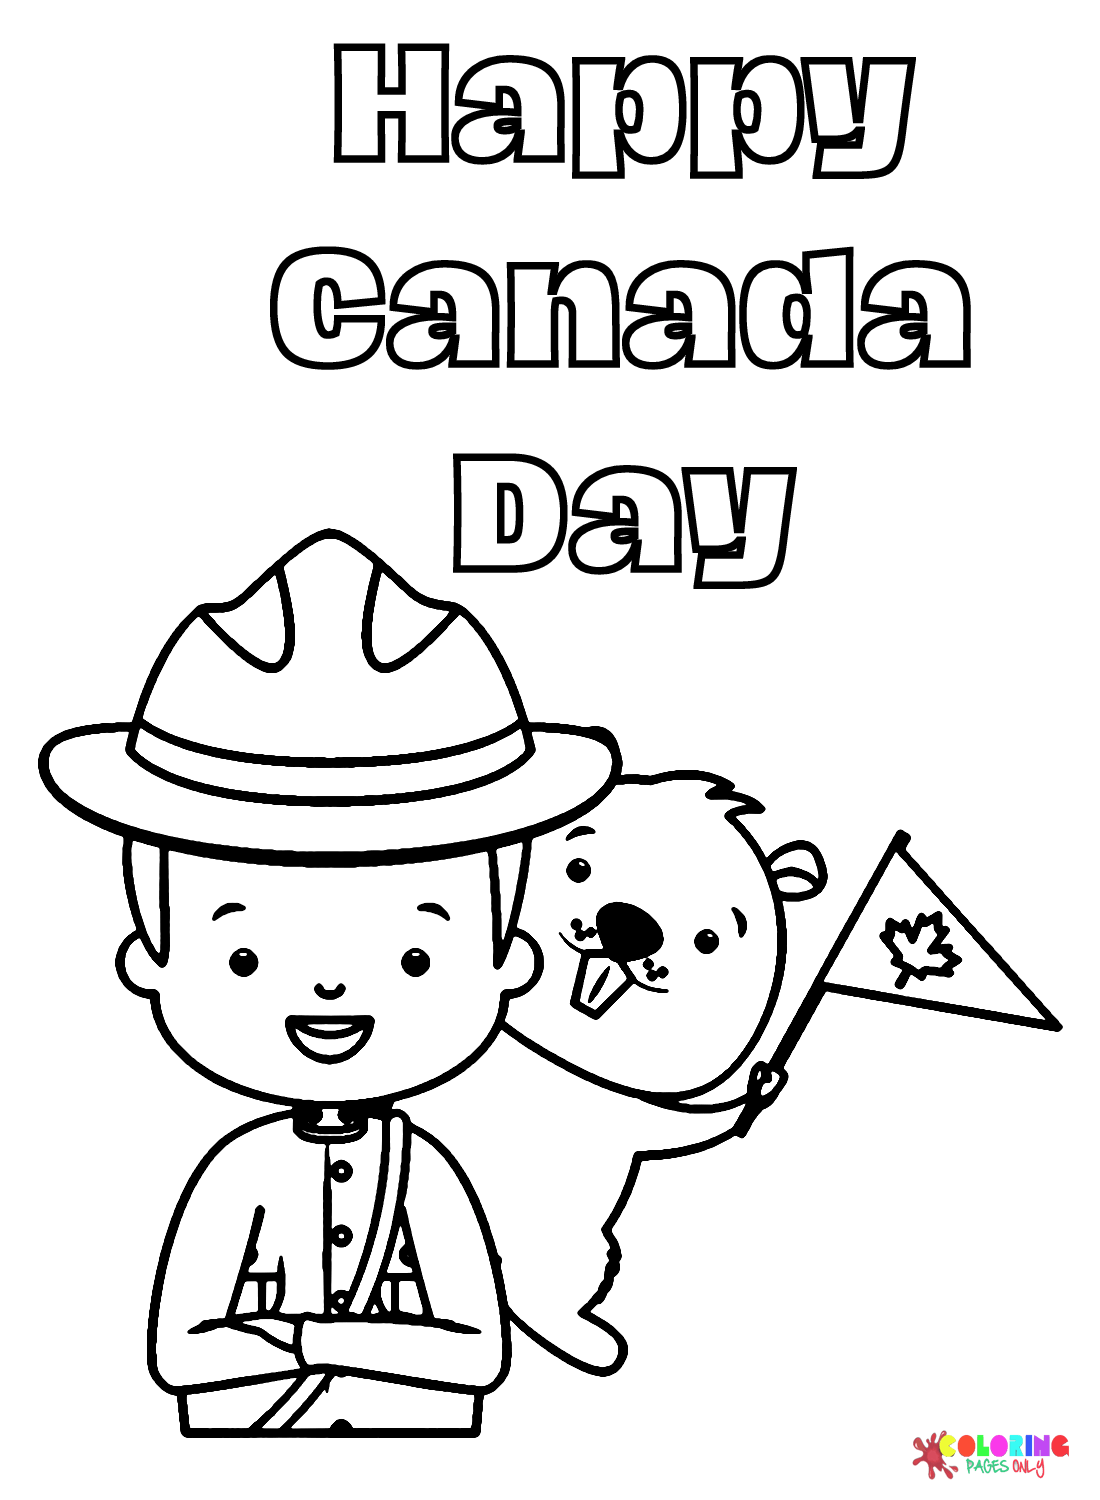 الشرطة مع بيفر يوم كندا سعيد من يوم كندا